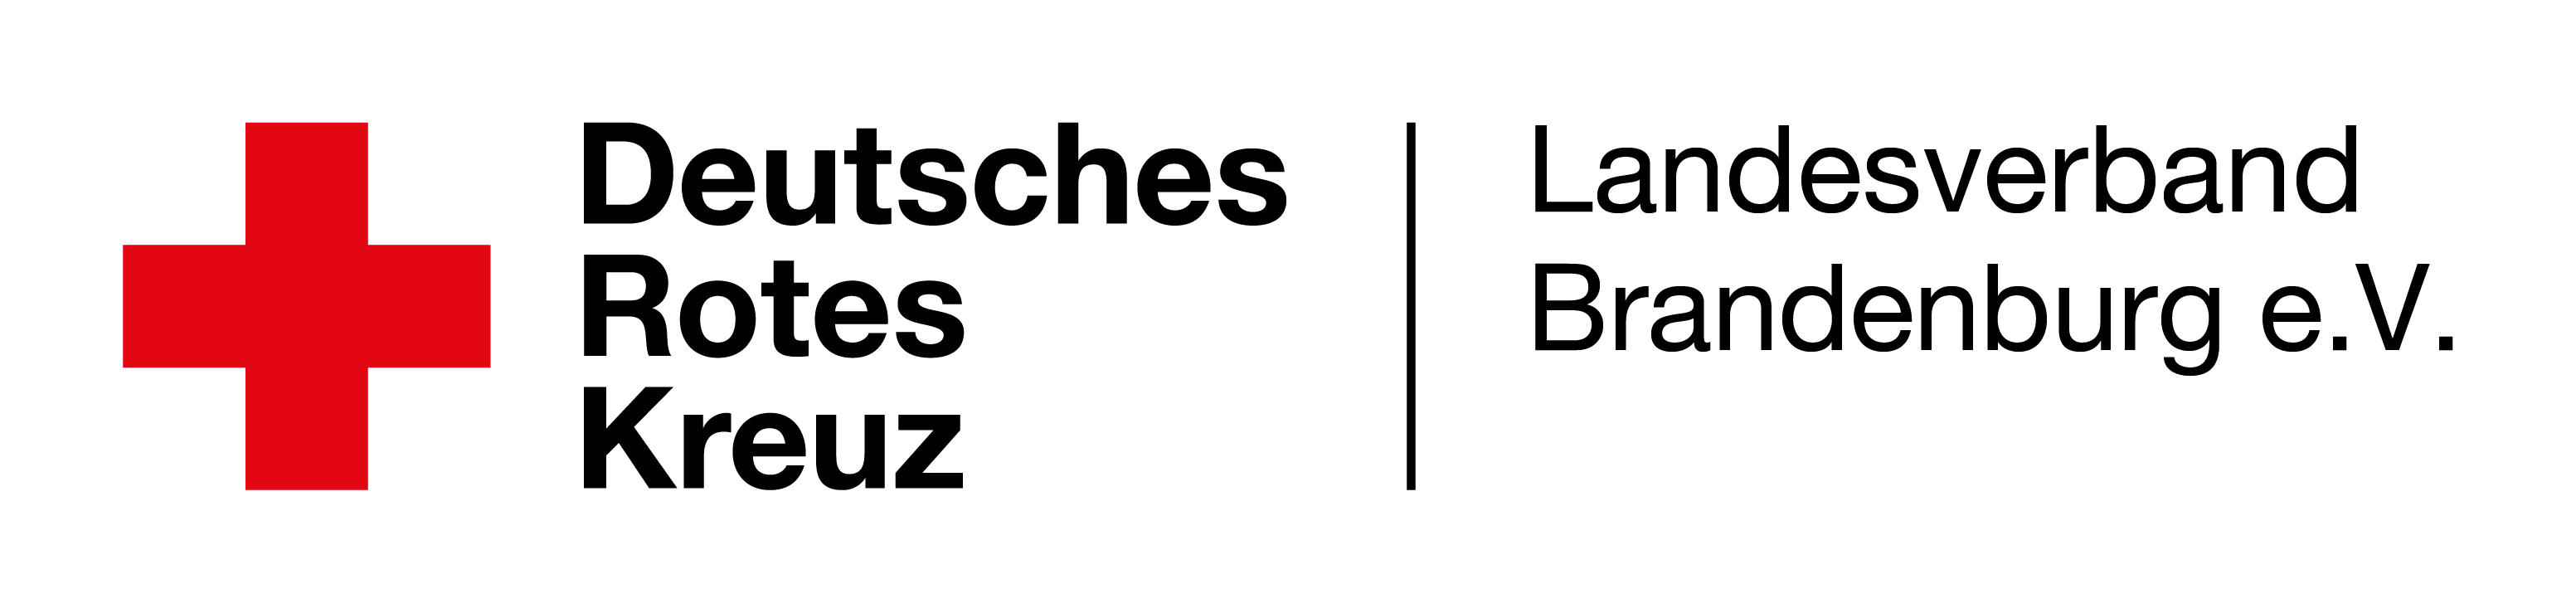 DRK Logo Landesverband horizontal